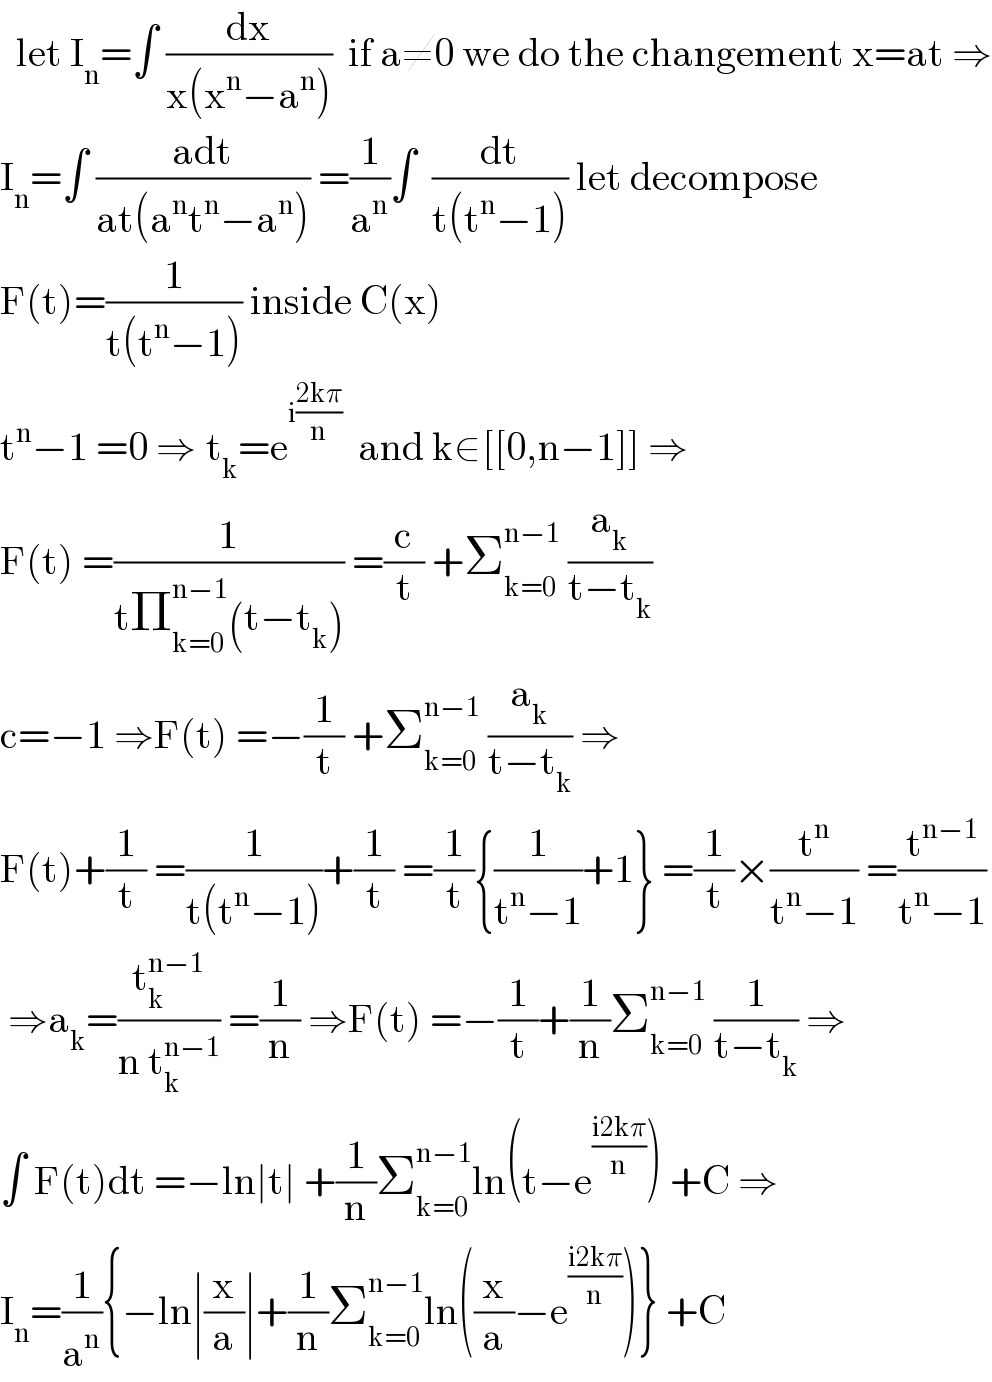   let I_n =∫ (dx/(x(x^n −a^n )))  if a≠0 we do the changement x=at ⇒  I_n =∫ ((adt)/(at(a^n t^n −a^n ))) =(1/a^n )∫  (dt/(t(t^n −1))) let decompose  F(t)=(1/(t(t^n −1))) inside C(x)  t^n −1 =0 ⇒_ t_k =e^(i((2kπ)/n))   and k∈[[0,n−1]] ⇒  F(t) =(1/(tΠ_(k=0) ^(n−1) (t−t_k ))) =(c/t) +Σ_(k=0) ^(n−1)  (a_k /(t−t_k ))  c=−1 ⇒F(t) =−(1/t) +Σ_(k=0) ^(n−1)  (a_k /(t−t_k )) ⇒  F(t)+(1/t) =(1/(t(t^n −1)))+(1/t) =(1/t){(1/(t^n −1))+1} =(1/t)×(t^n /(t^n −1)) =(t^(n−1) /(t^n −1))   ⇒a_k =(t_k ^(n−1) /(n t_k ^(n−1) )) =(1/n) ⇒F(t) =−(1/t)+(1/n)Σ_(k=0) ^(n−1)  (1/(t−t_k )) ⇒  ∫ F(t)dt =−ln∣t∣ +(1/n)Σ_(k=0) ^(n−1) ln(t−e^((i2kπ)/n) ) +C ⇒  I_n =(1/a^n ){−ln∣(x/a)∣+(1/n)Σ_(k=0) ^(n−1) ln((x/a)−e^((i2kπ)/n) )} +C  